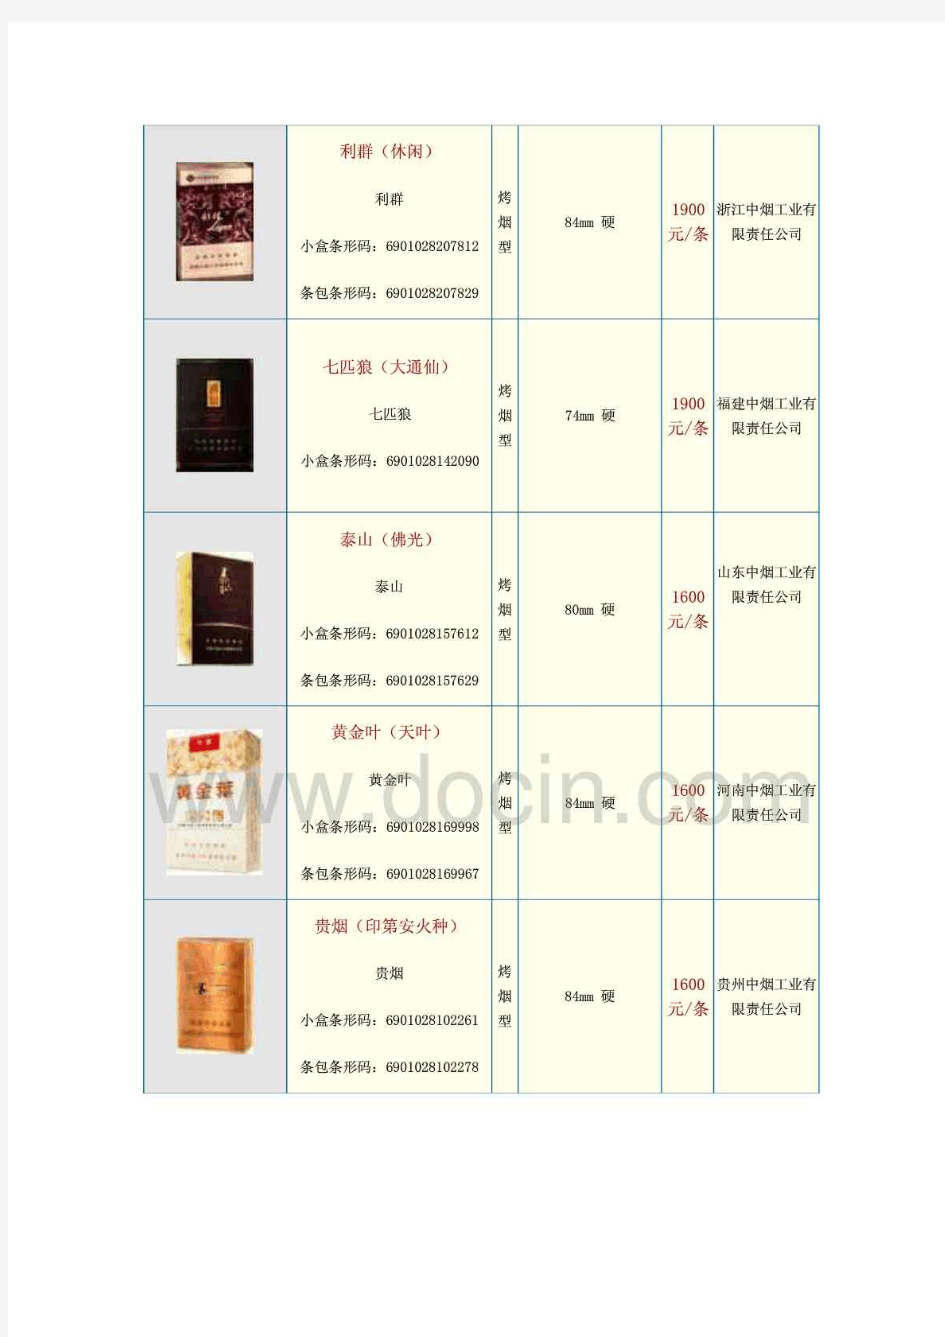 中国各类名烟价格表900元以上并附图